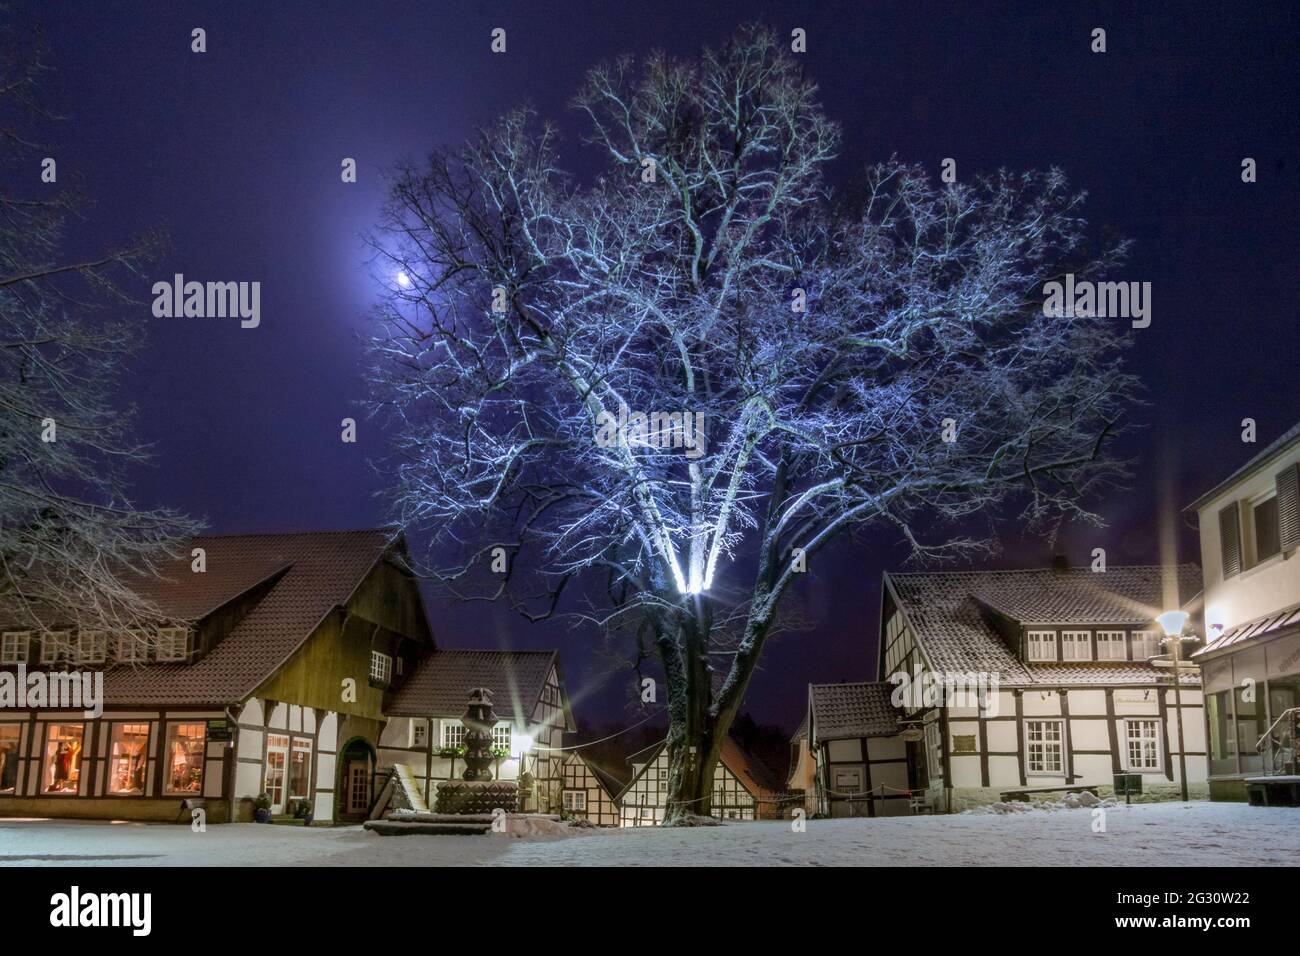 Romantico paesaggio notturno nella città vecchia tedesca con case a graticcio e alberi innevati al chiaro di luna, Teclemburgo, Germania Foto Stock